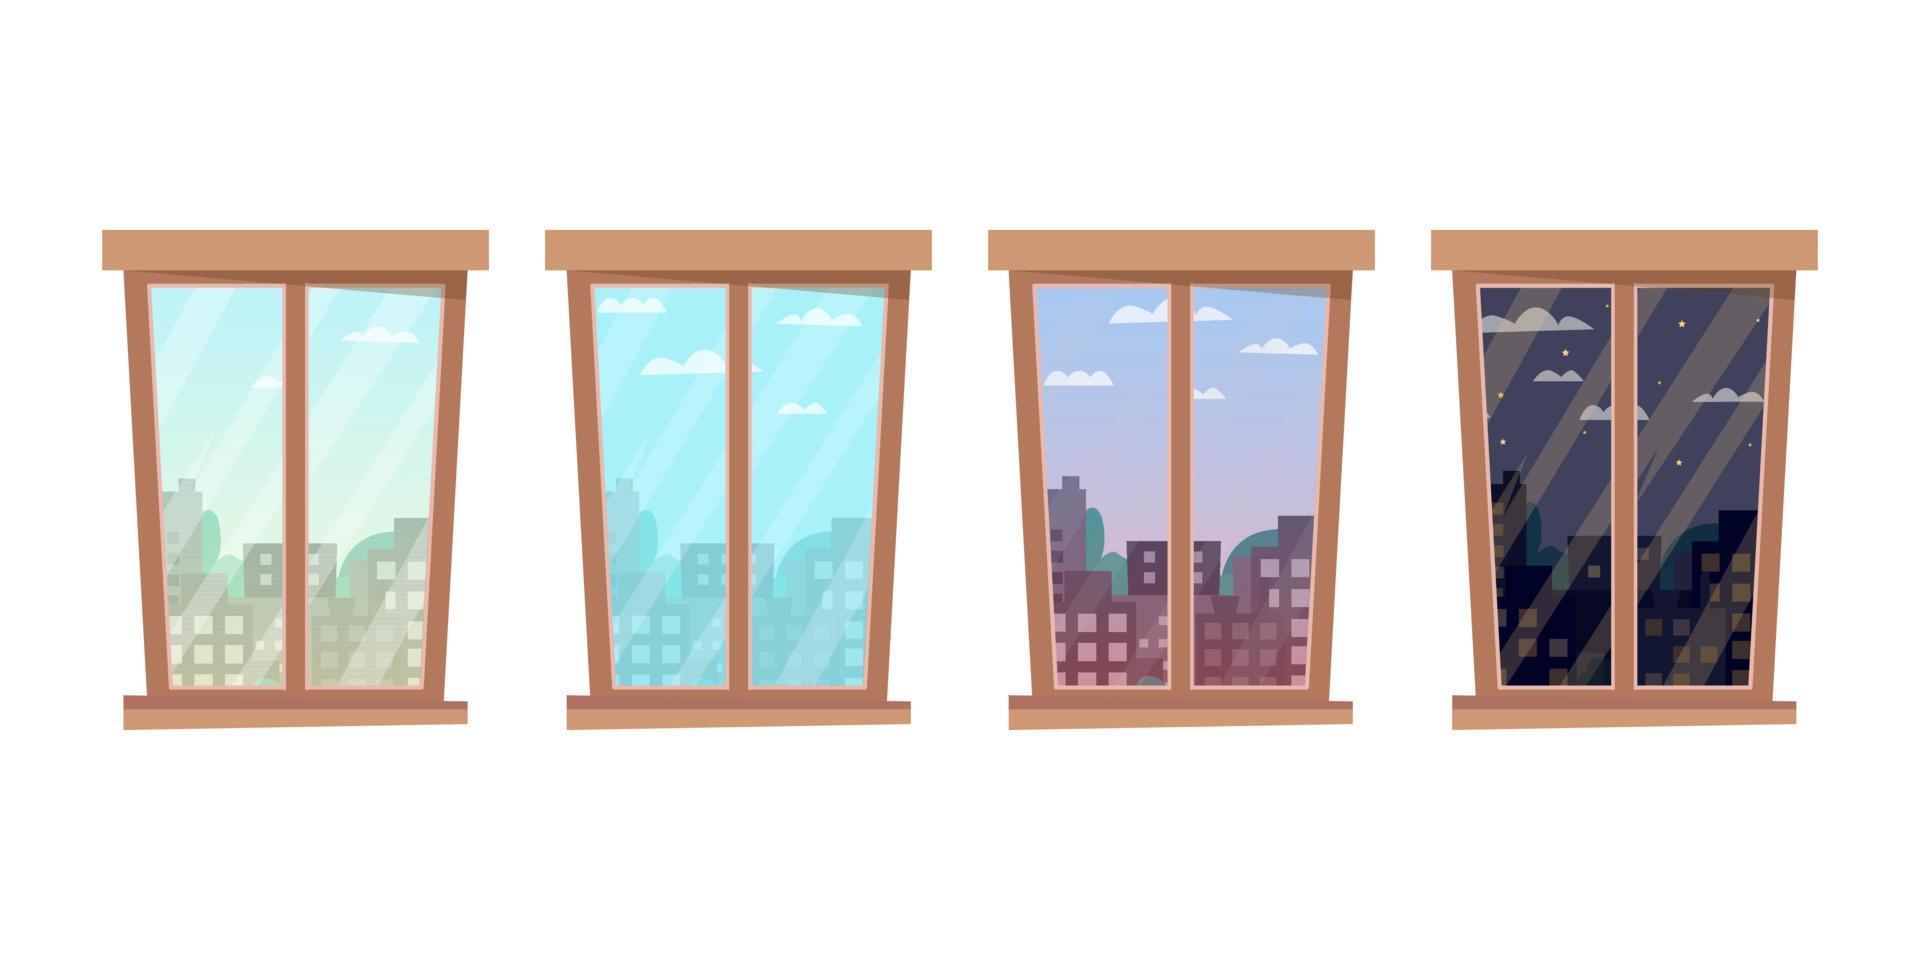 finestre, vista dalla finestra mattina, pomeriggio, sera, notte su paesaggi cittadini. in lontananza ci sono grattacieli, alberi, stelle e nuvole nel cielo. illustrazione vettoriale in stile piatto